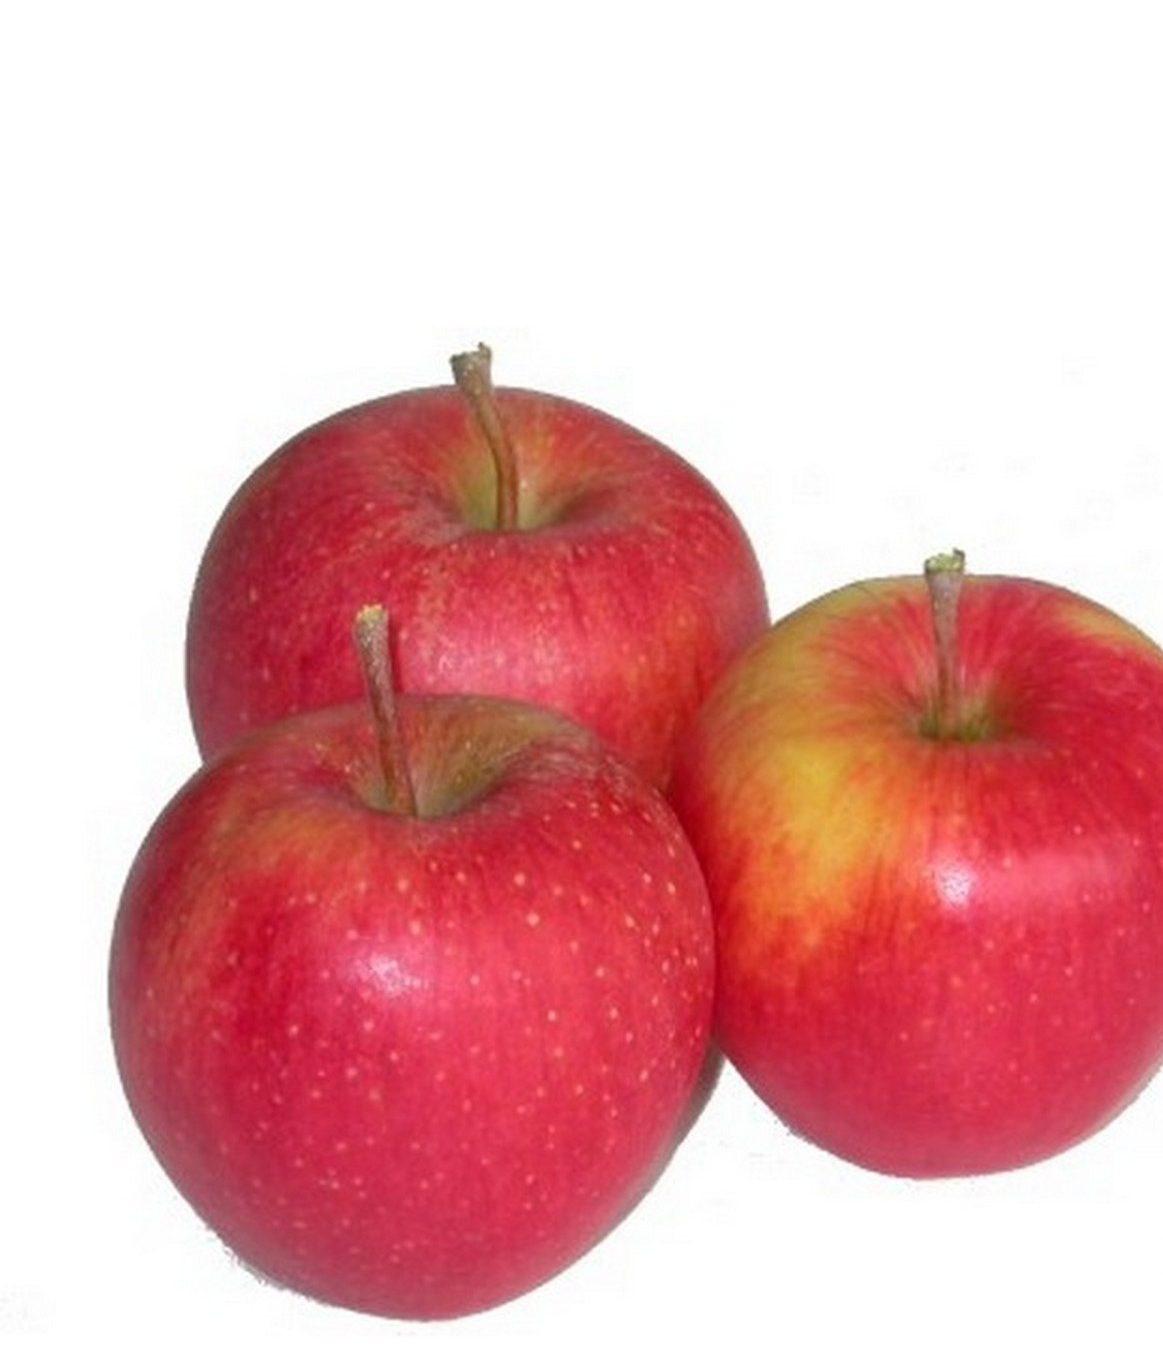 Яблоки Голден: описание сорта и разновидности, посадка и уход, отзывы с фото